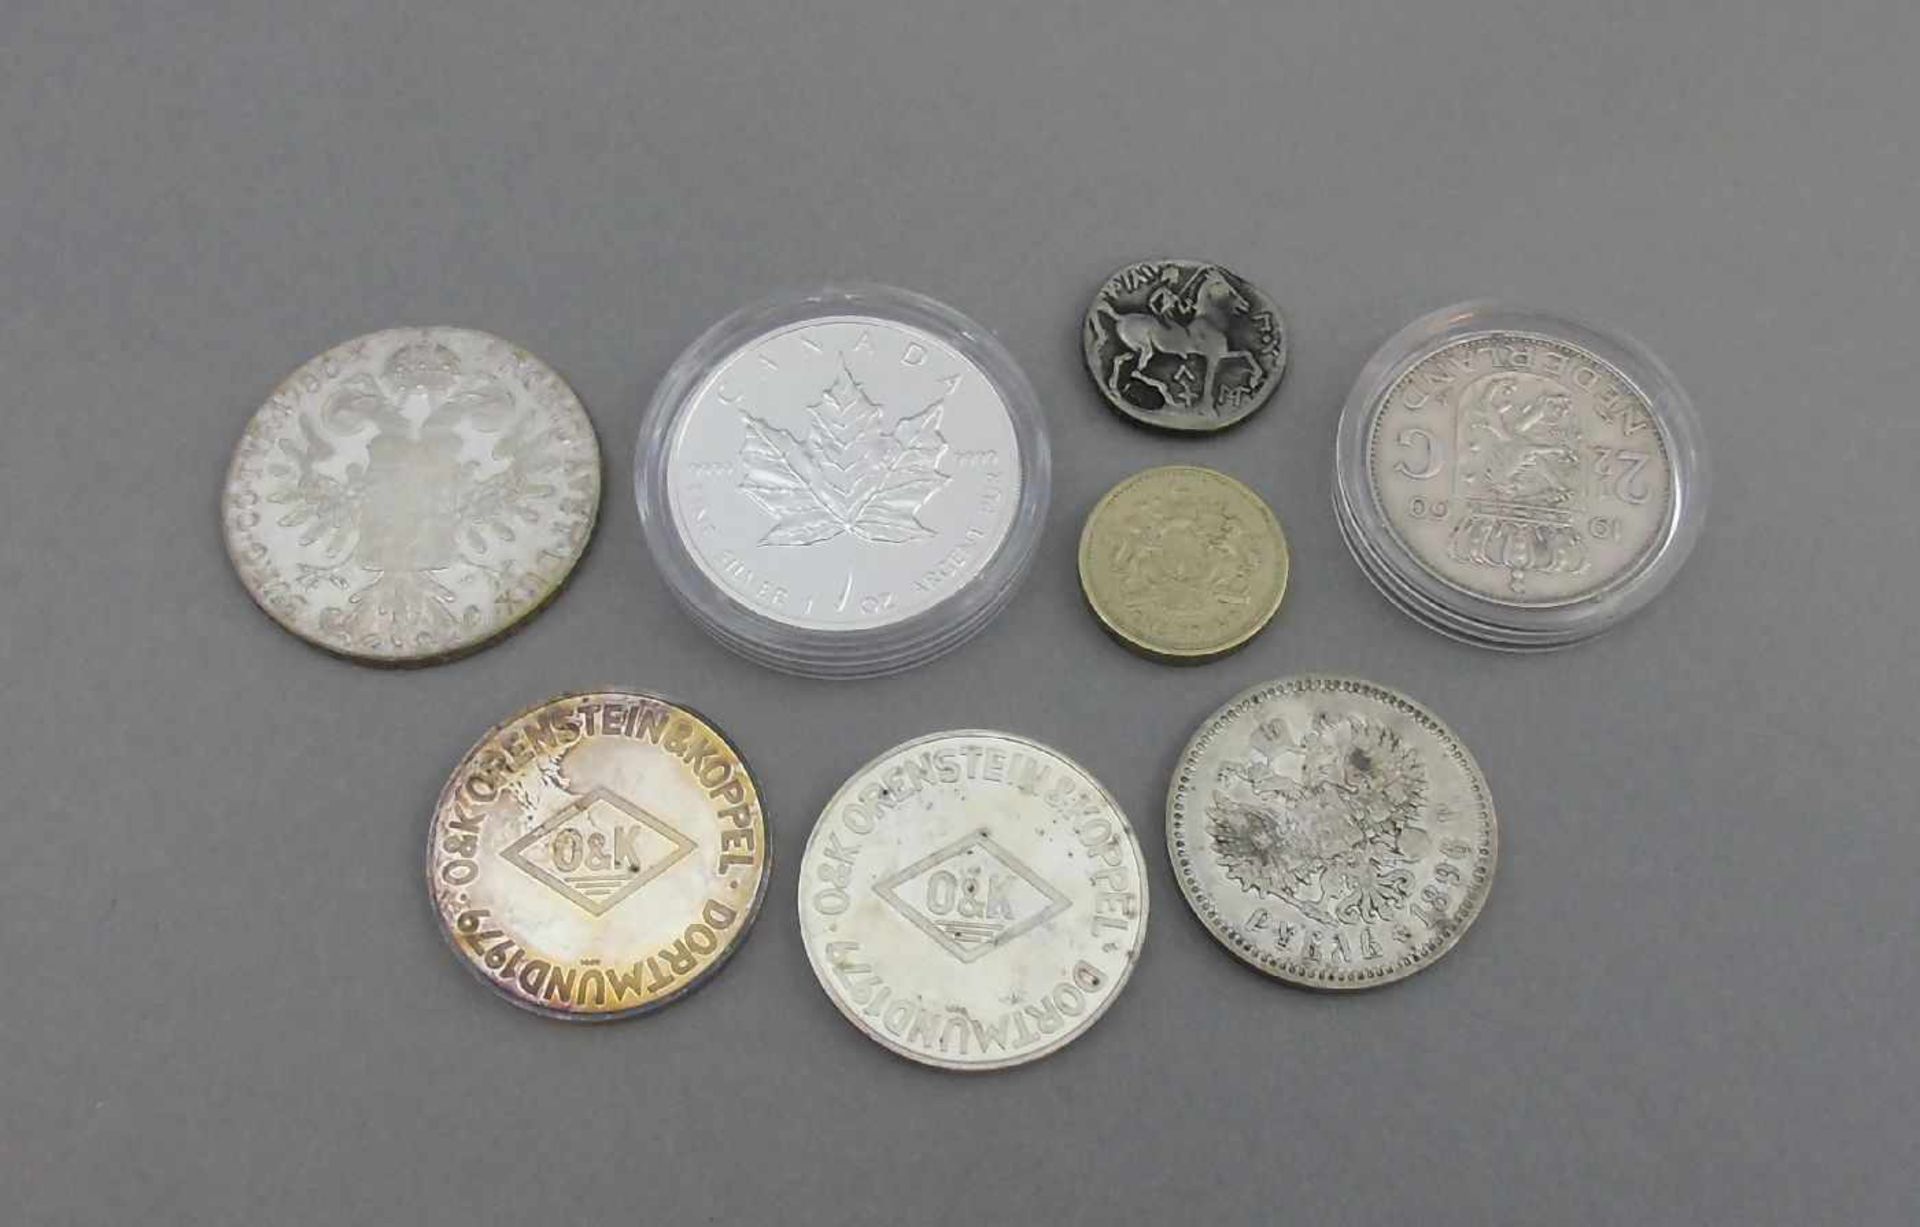 KONVOLUT MÜNZEN / SILBERMÜNZEN / coins, 20. Jh., unterschiedliche Nominalwerte und - Image 2 of 2